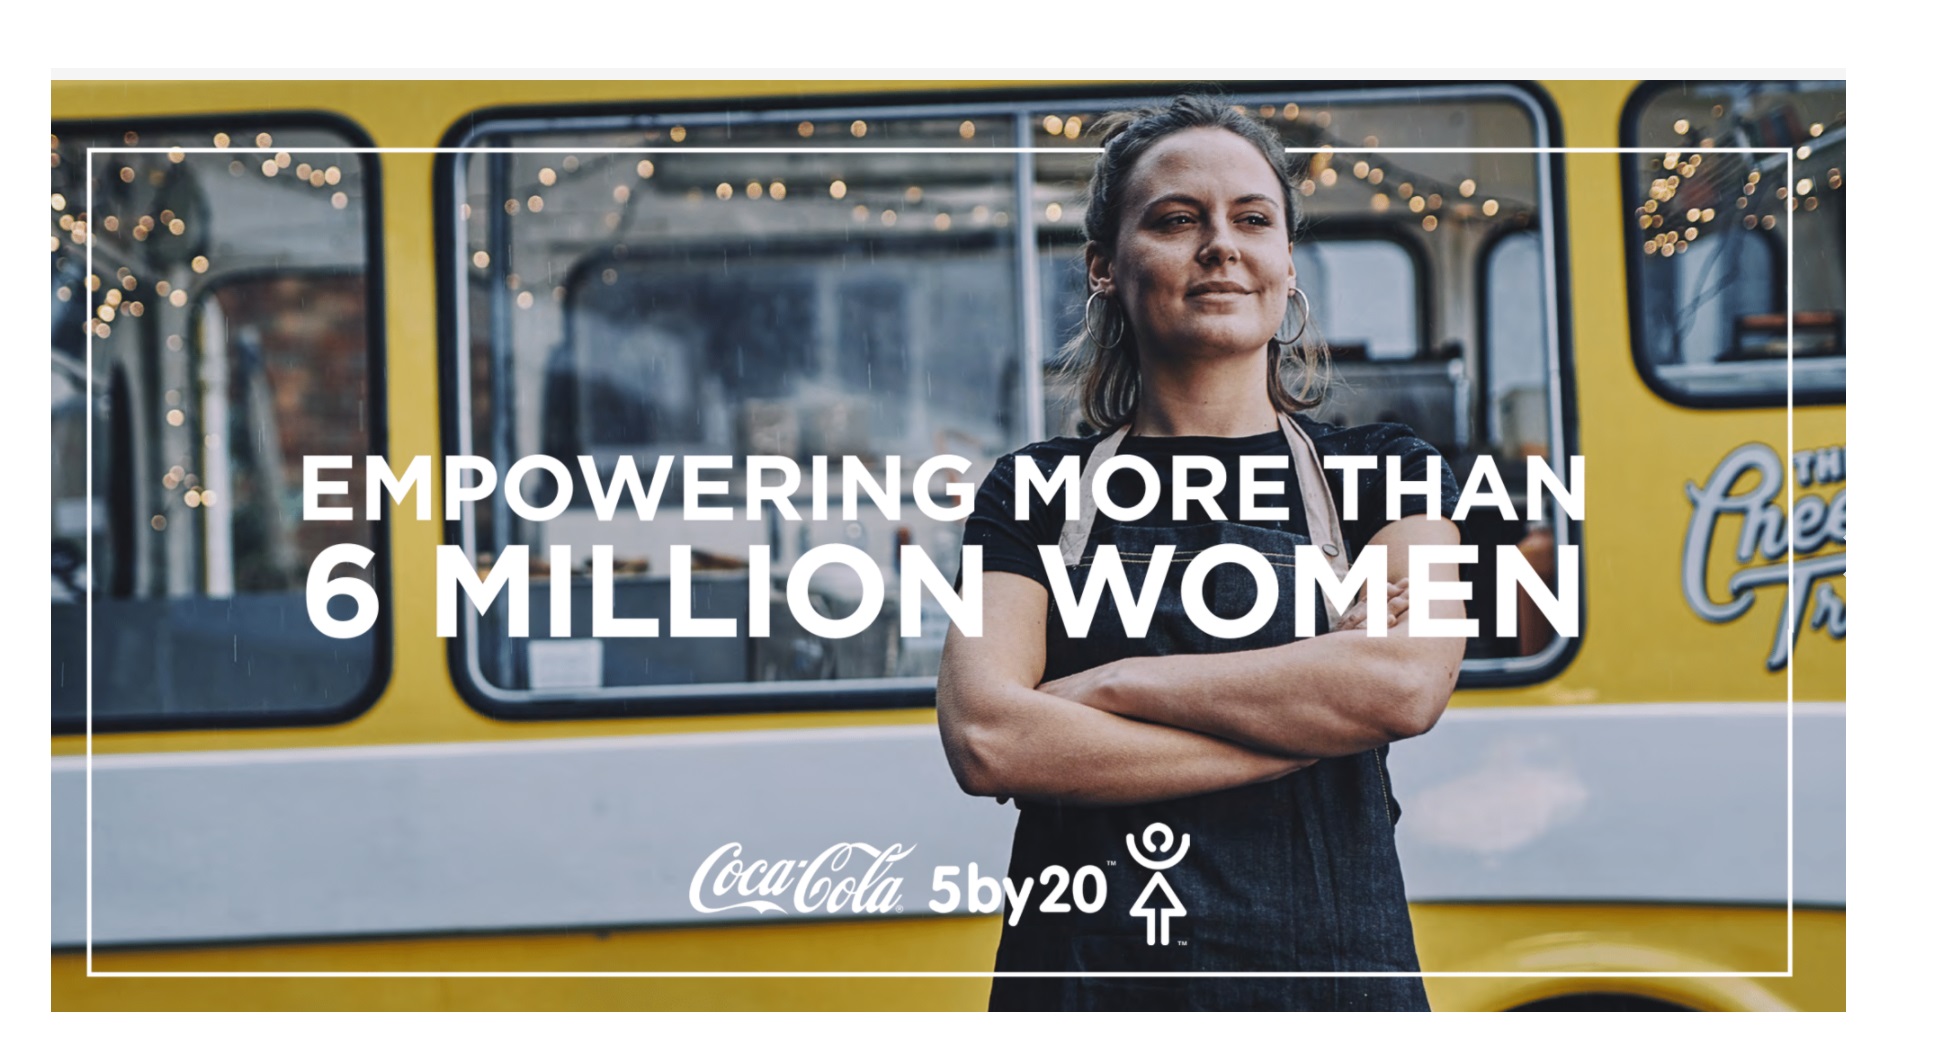 Coca-cola empodera a más de 6 millones de mujeres en todo el mundo en su compromiso global Ana Gascón, Directora de Responsabilidad Corporativa de Coca-Cola Iberia, "En Coca-Cola somos conscientes de la contribución de las mujeres a mejorar sus entornos socioeconómicos